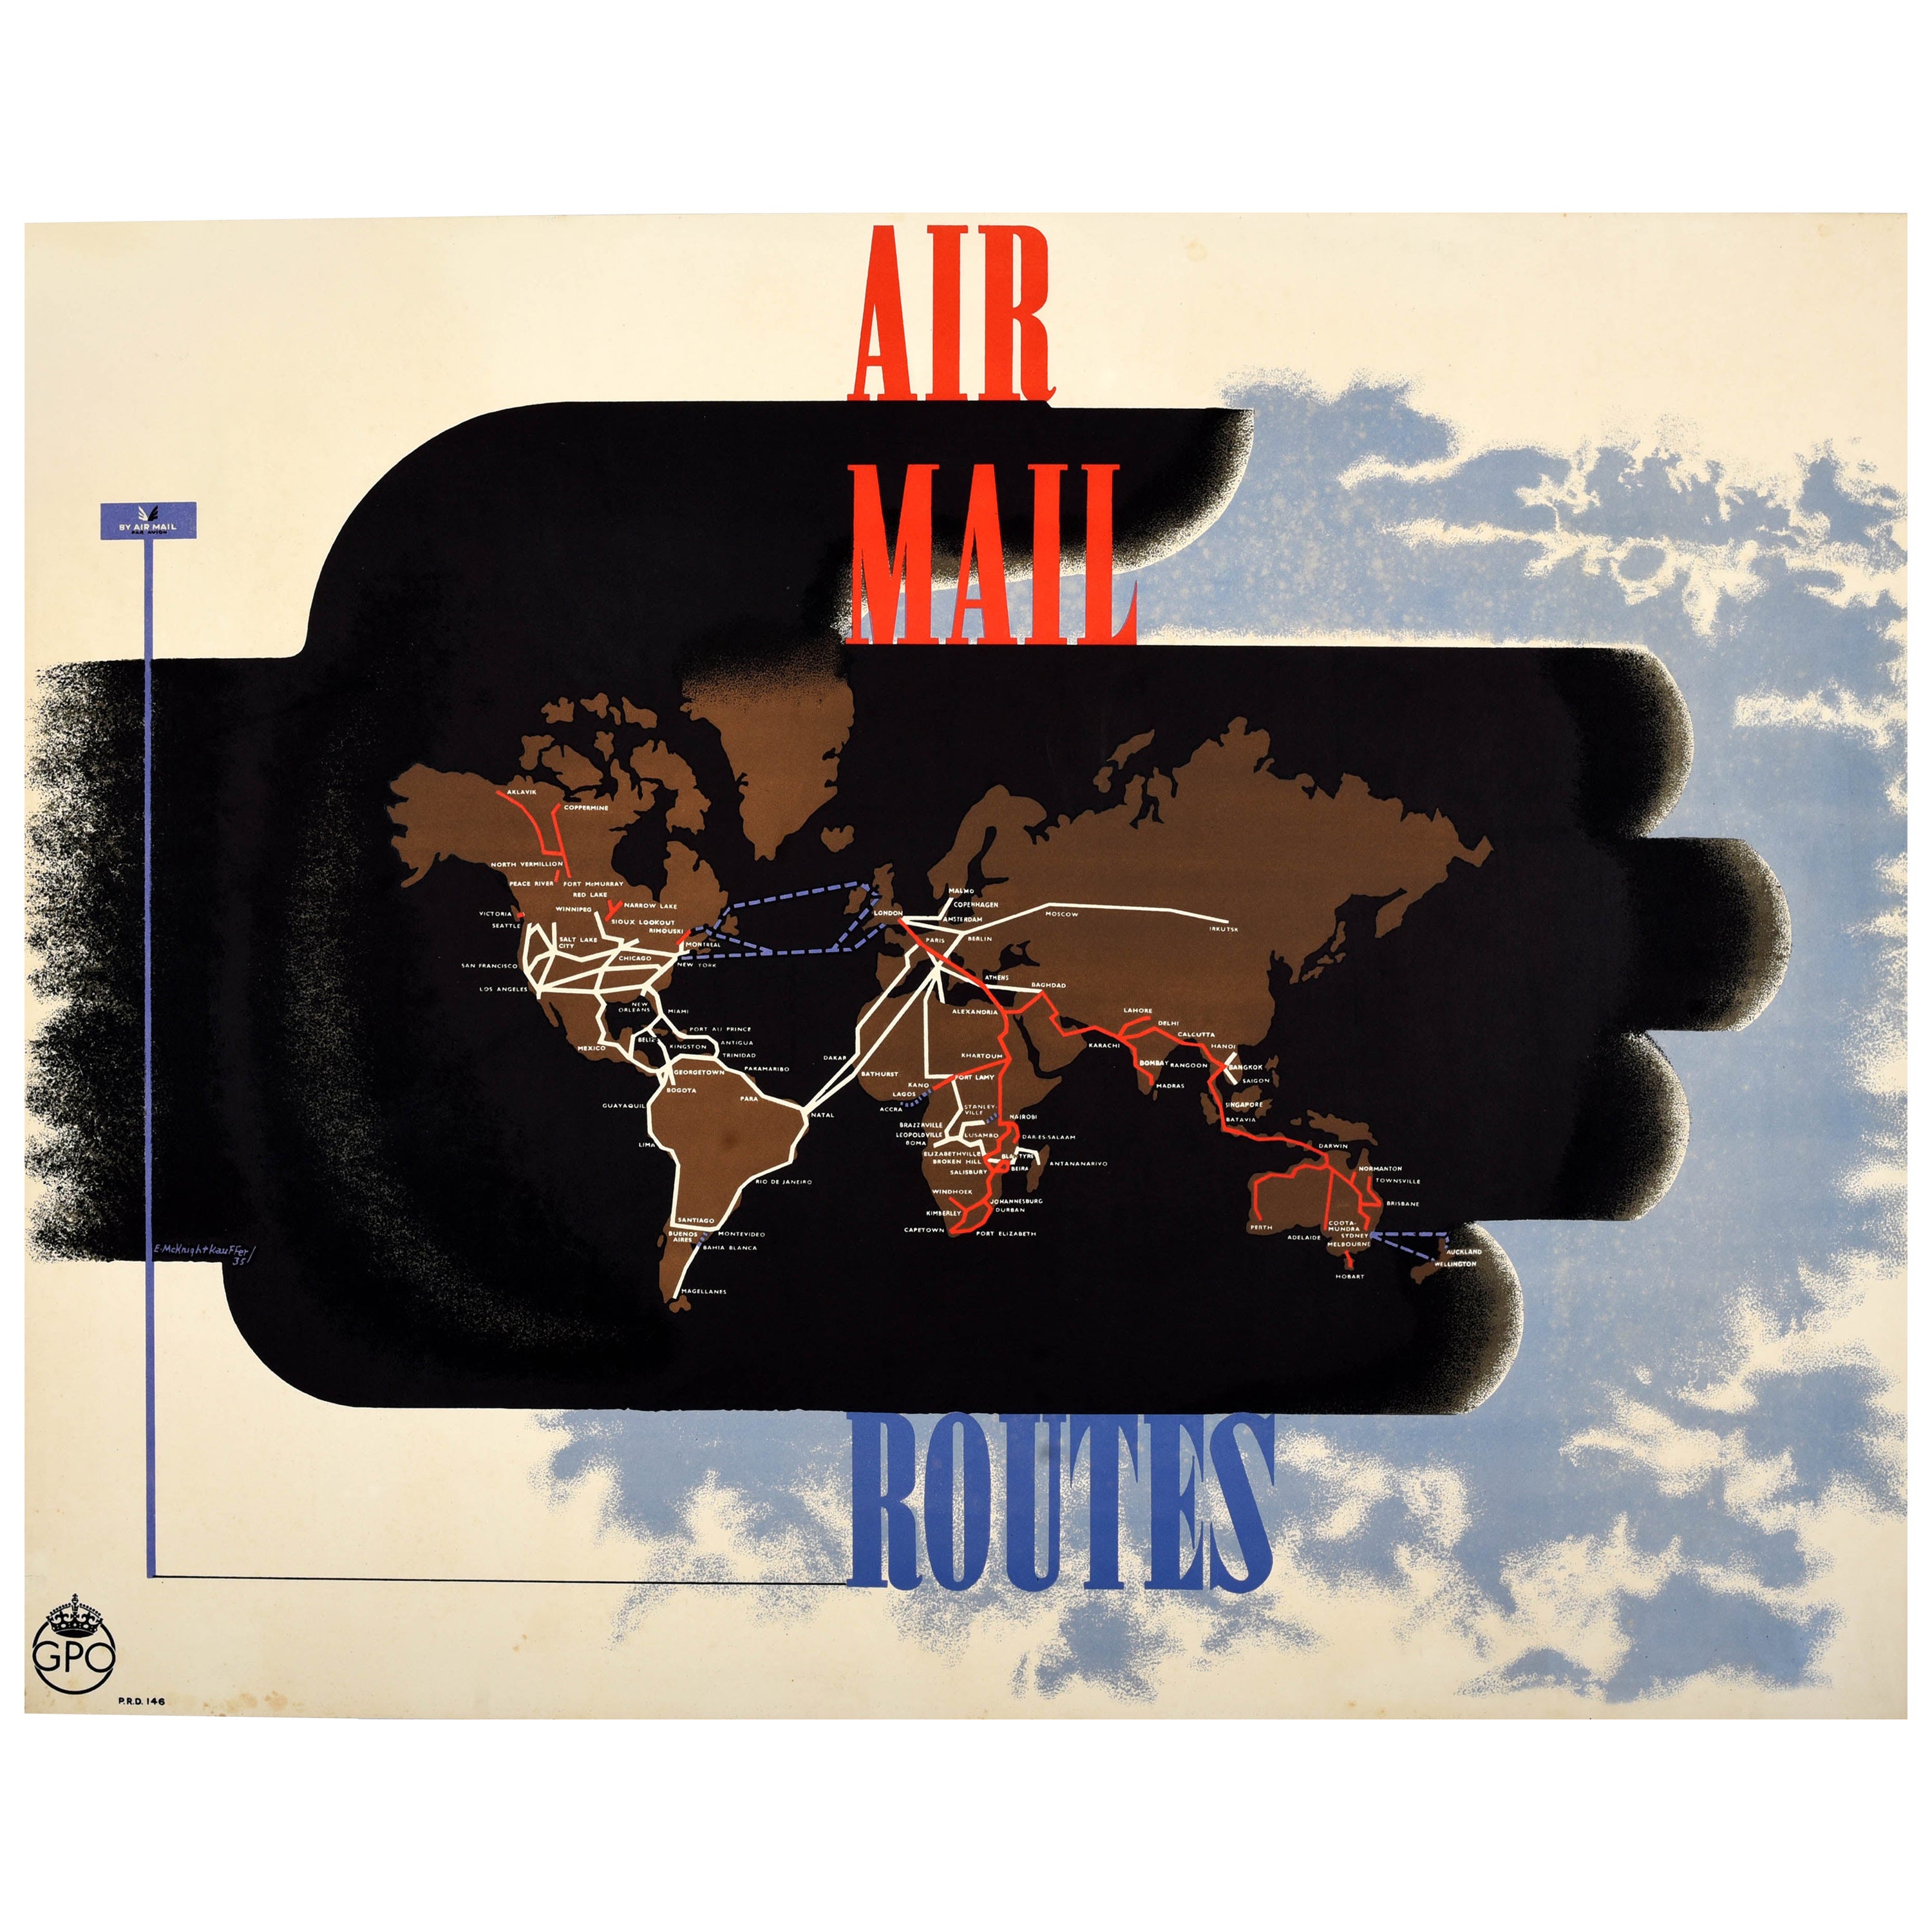 Seltenes Original-Vintage-Werbeplakat Air Mail Routes GPO Mcknight Kauffer, GPO